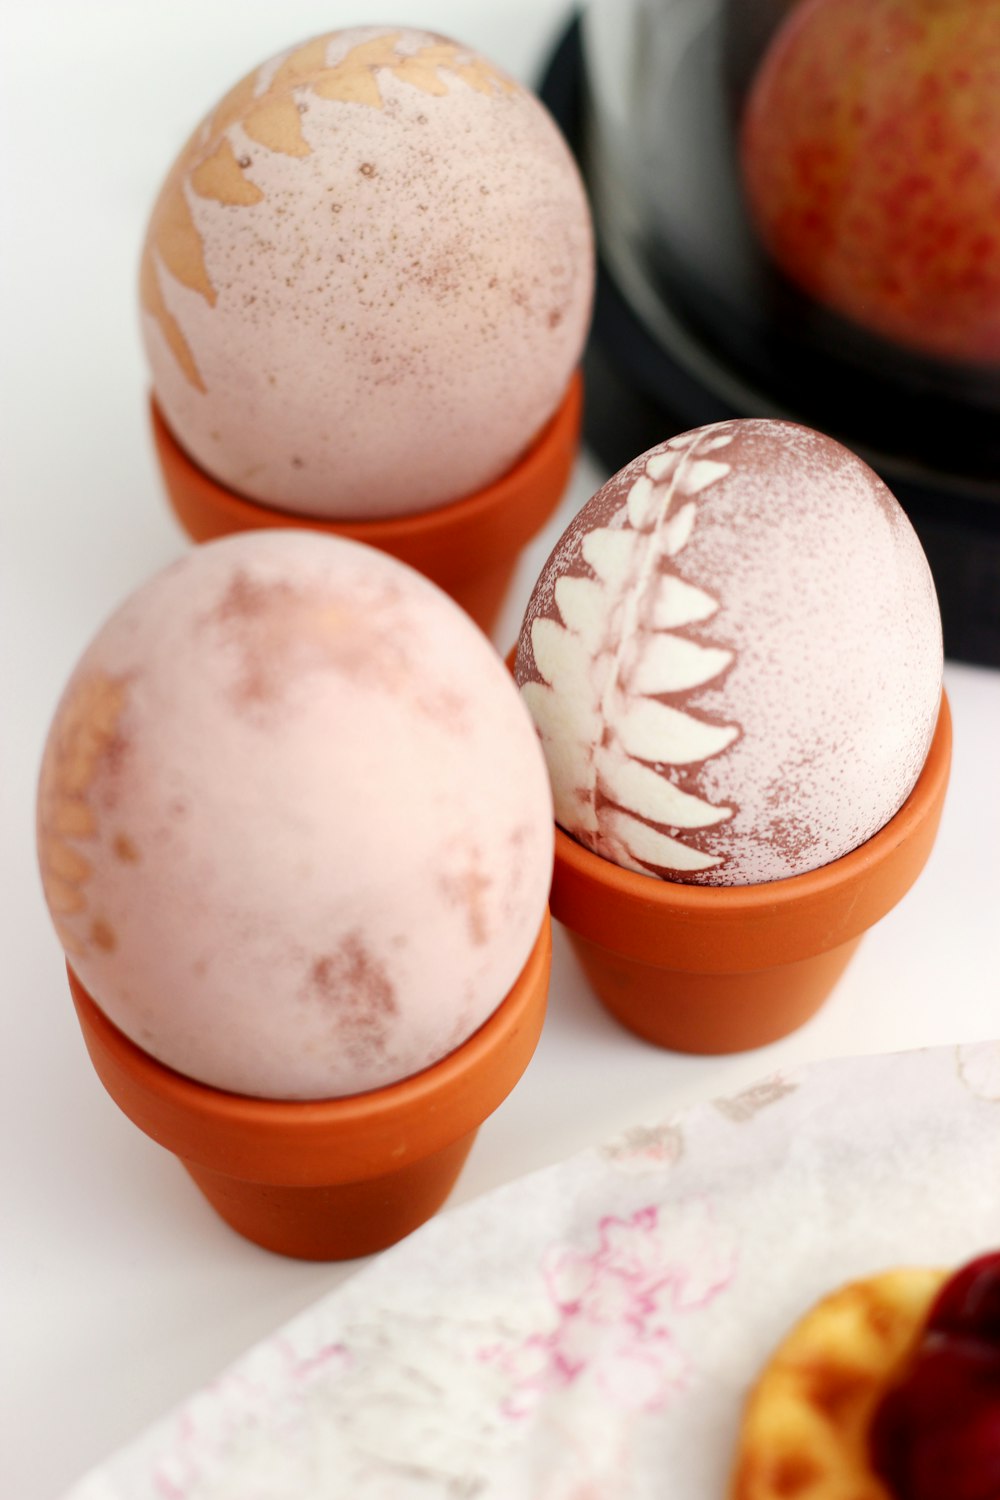 três ovos brancos em cima da superfície branca